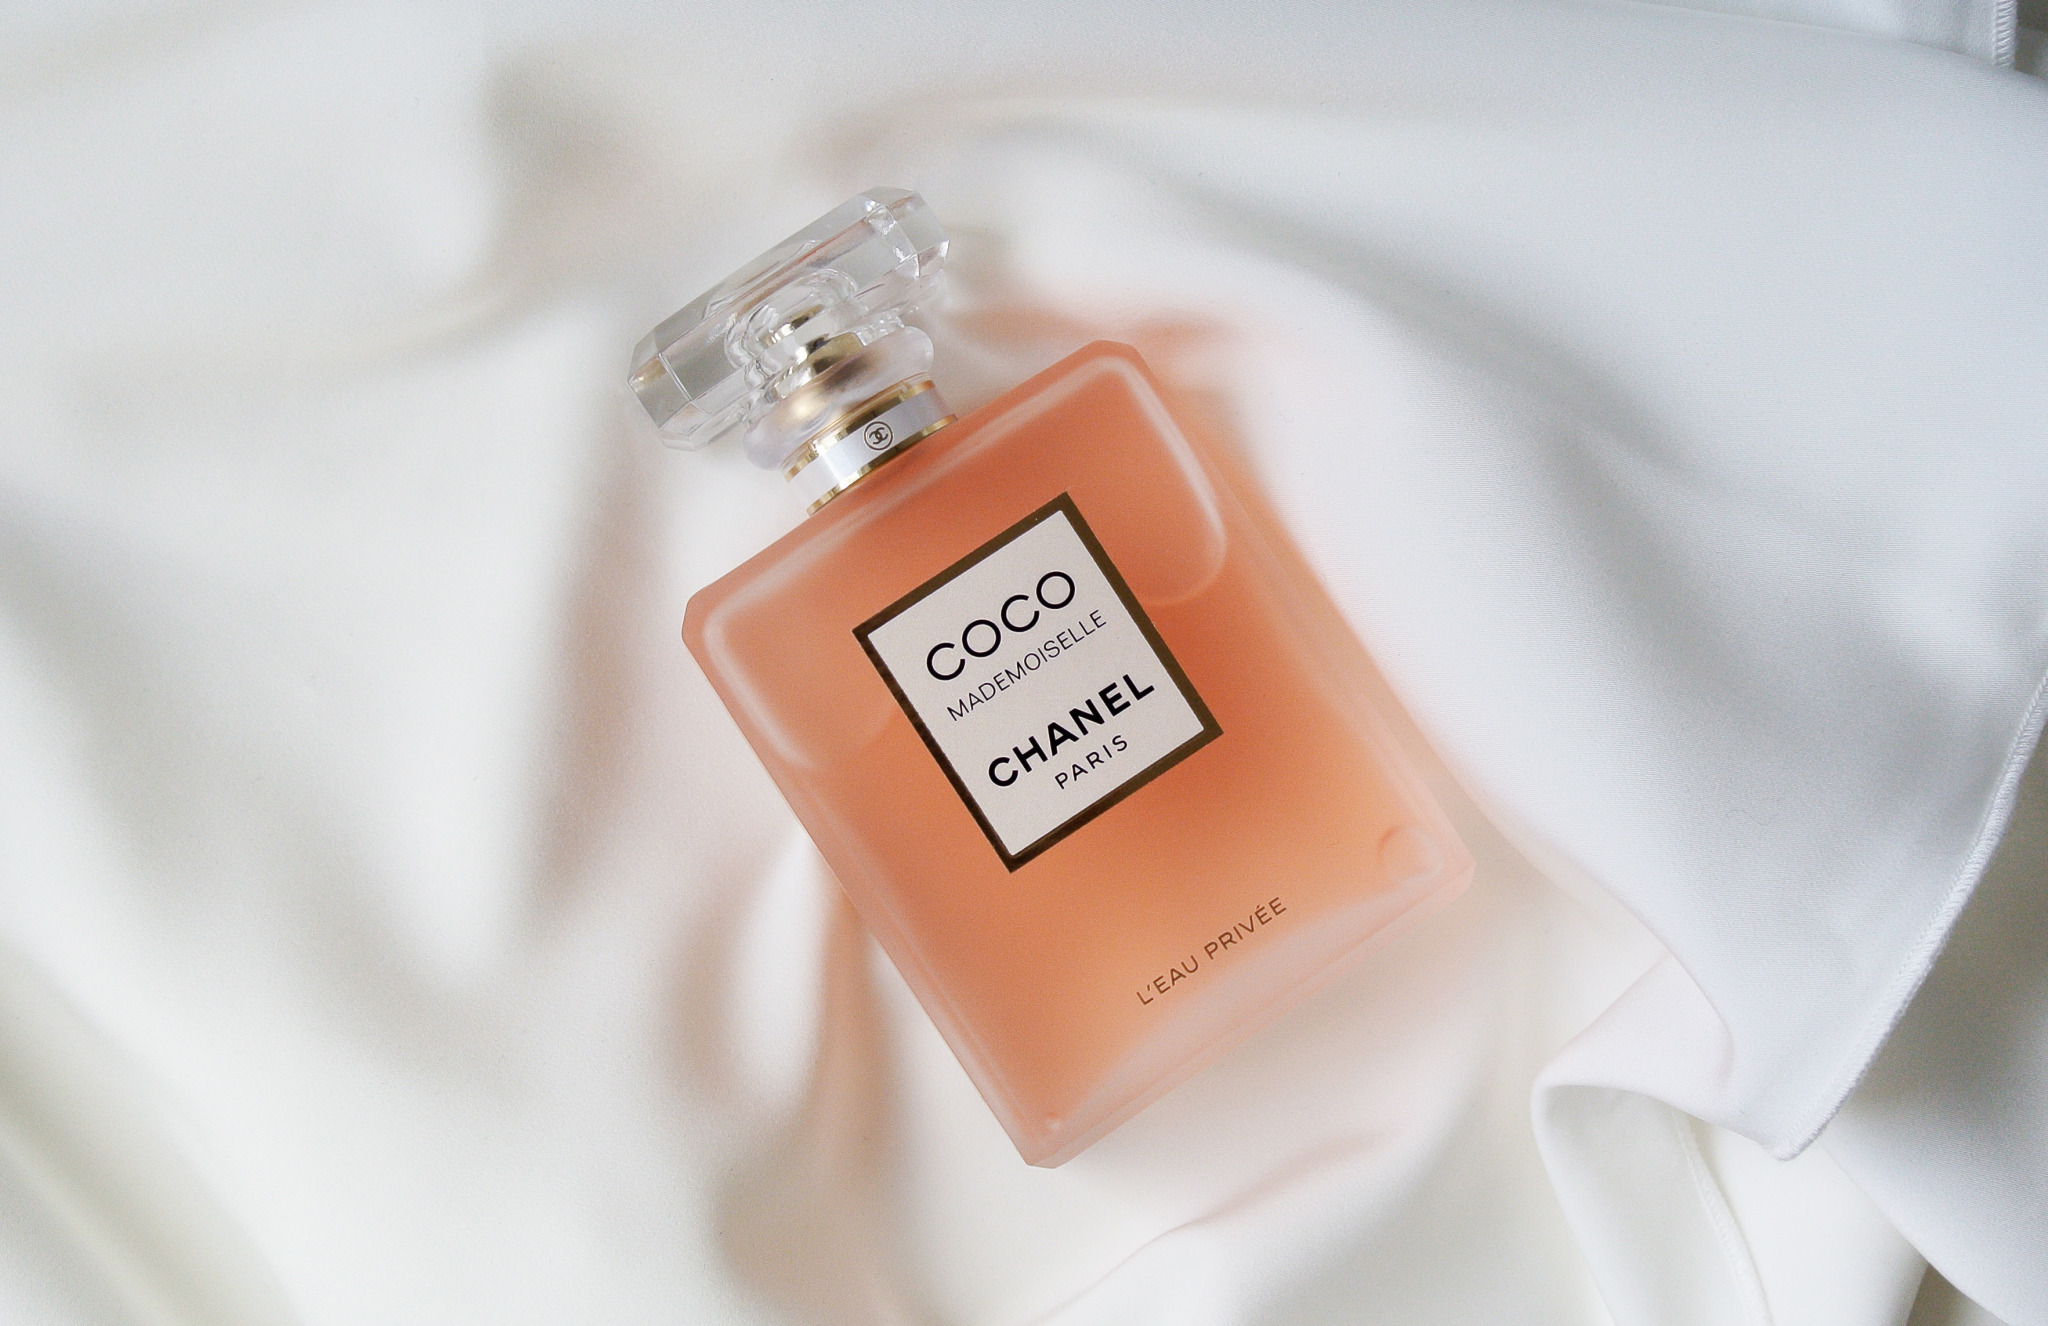 Chanel Coco Mademoiselle L'Eau Privee Eau De Parfum 50Ml